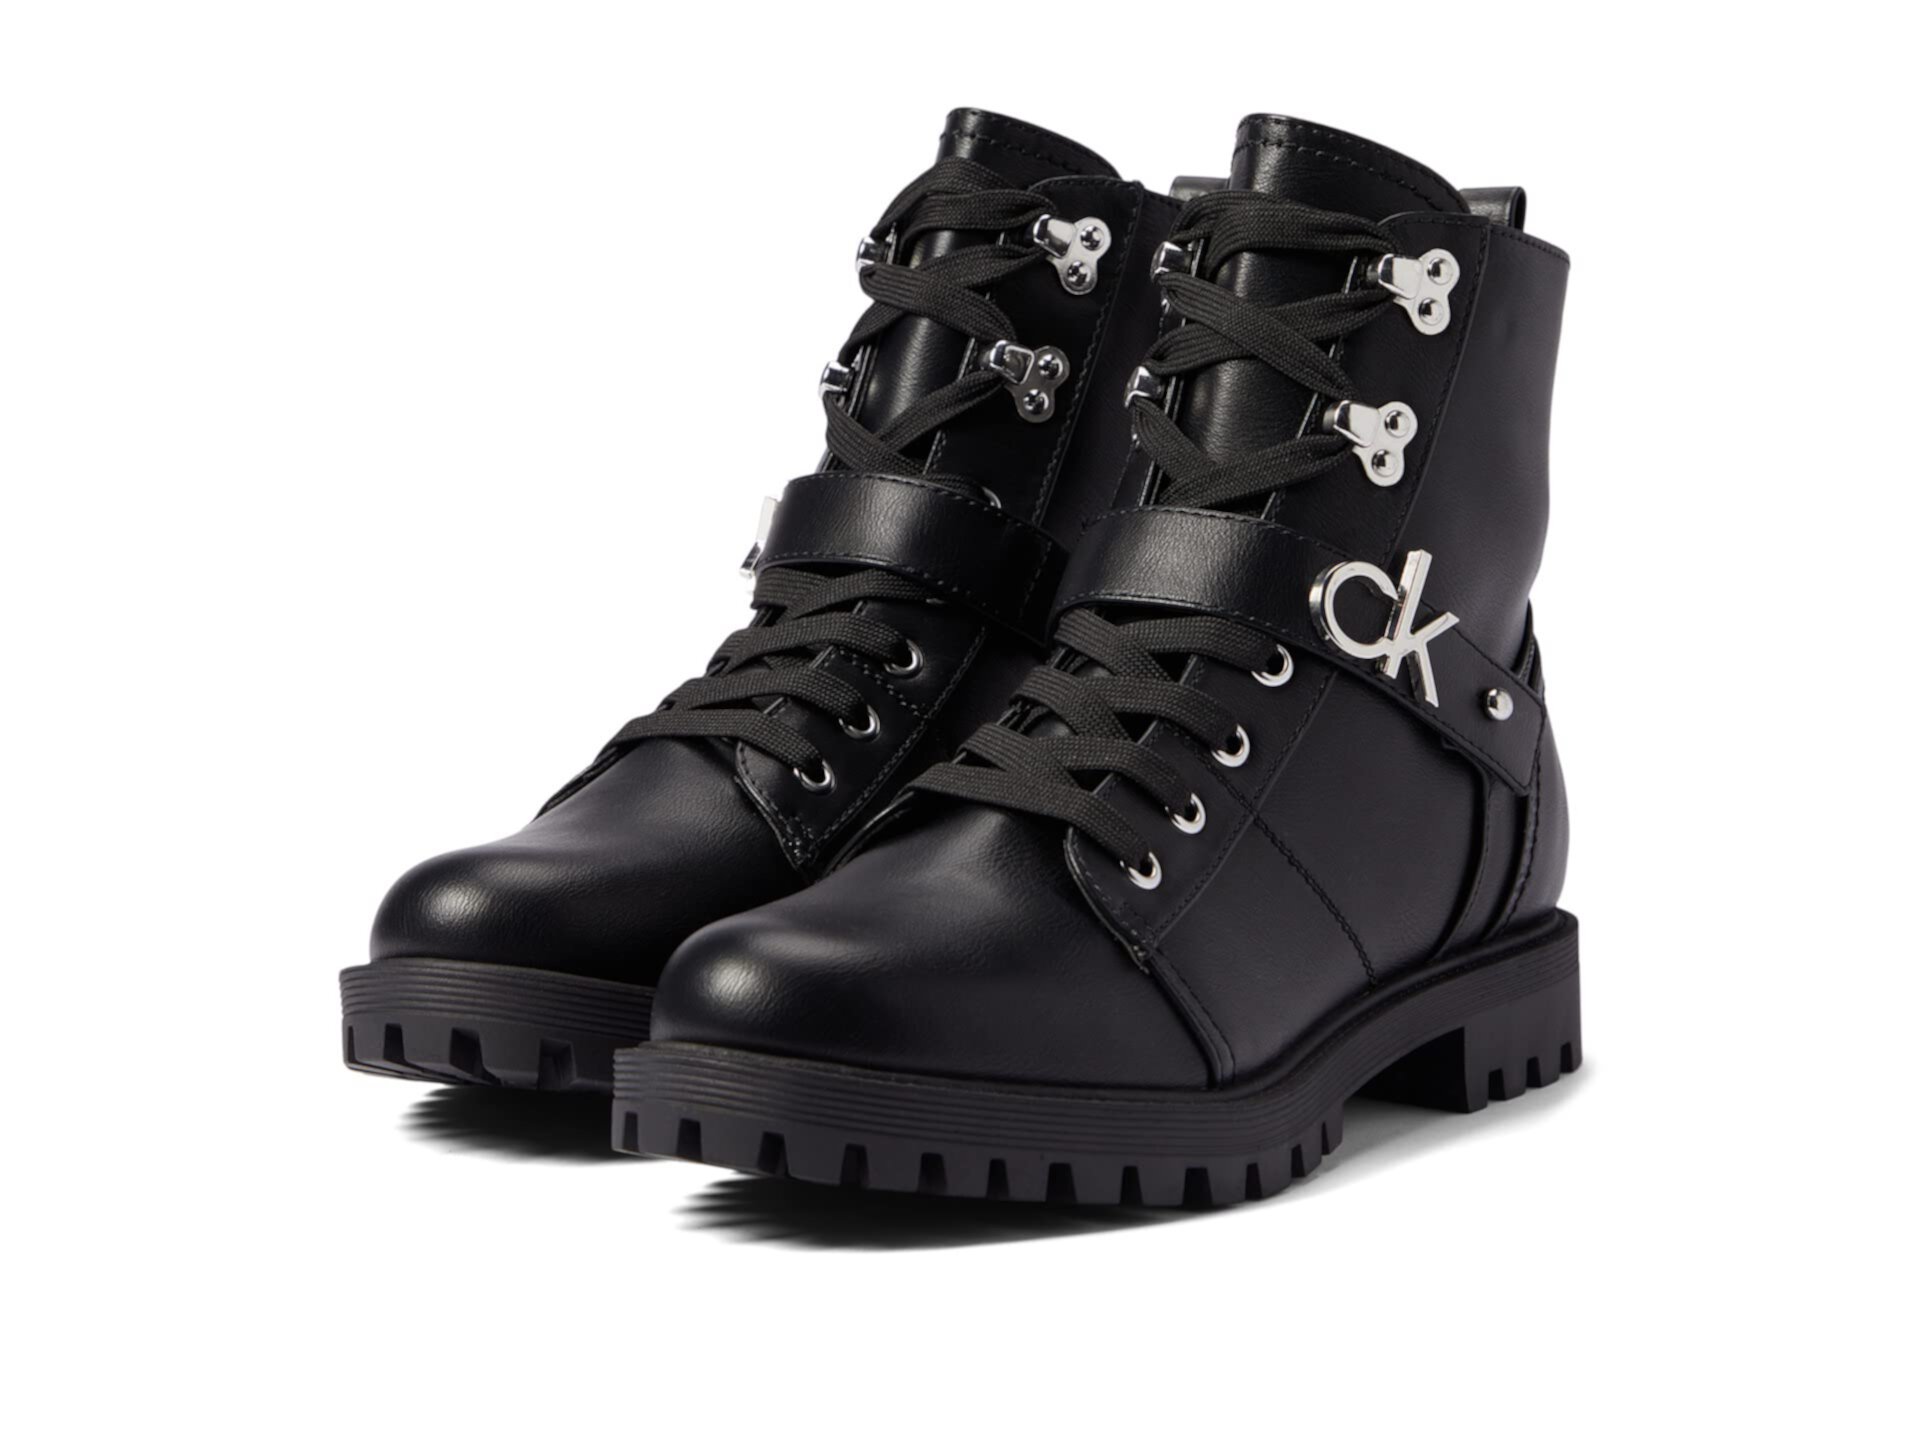 Заказать Ботинки на шнуровке Гэвин Calvin Klein, цвет - черный, по цене 12300 рублей на маркетплейсе Usmall.ru